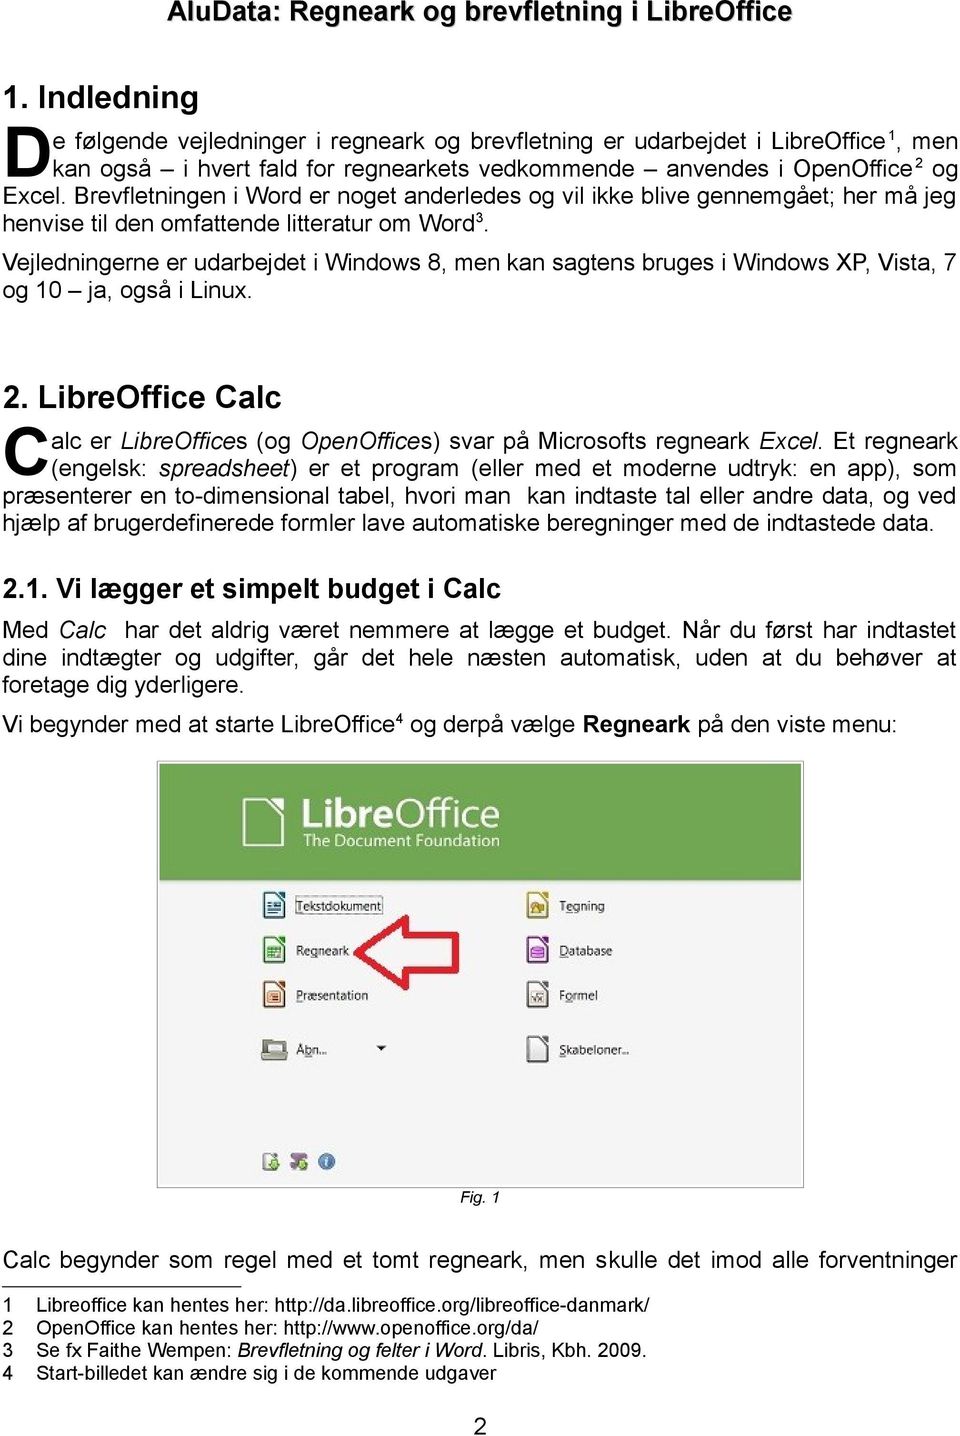 AluData: Regneark og brevfletning i LibreOffice. AluData: Regneark ...